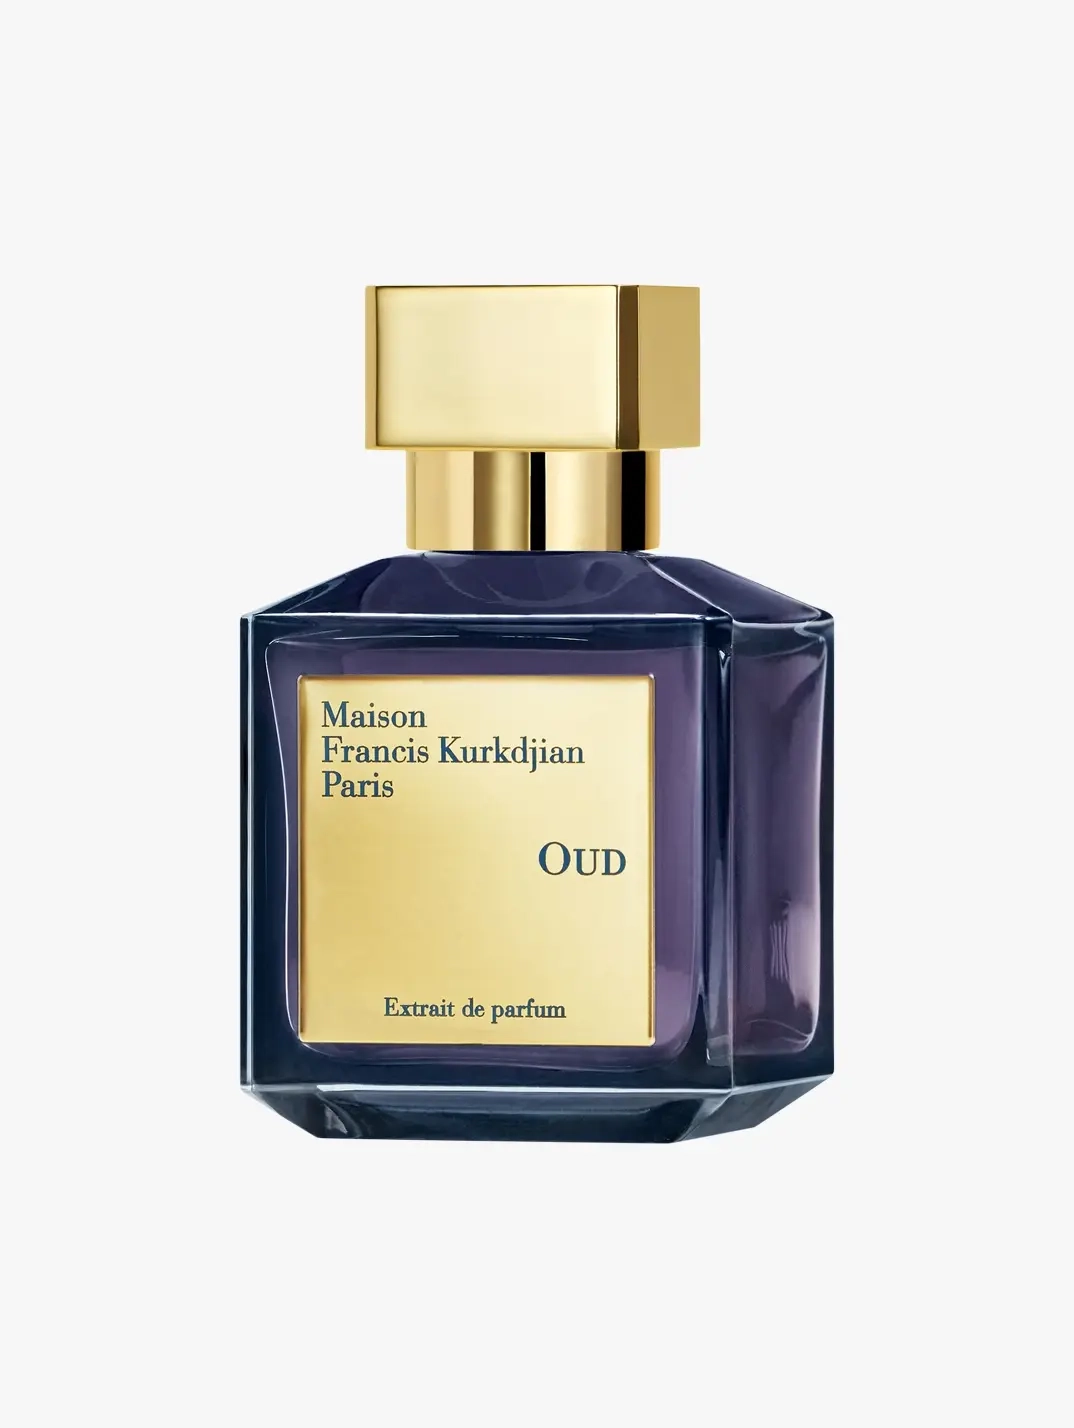 Maison Francis Kurkdjian Paris Oud Extrait De Parfum 70ml